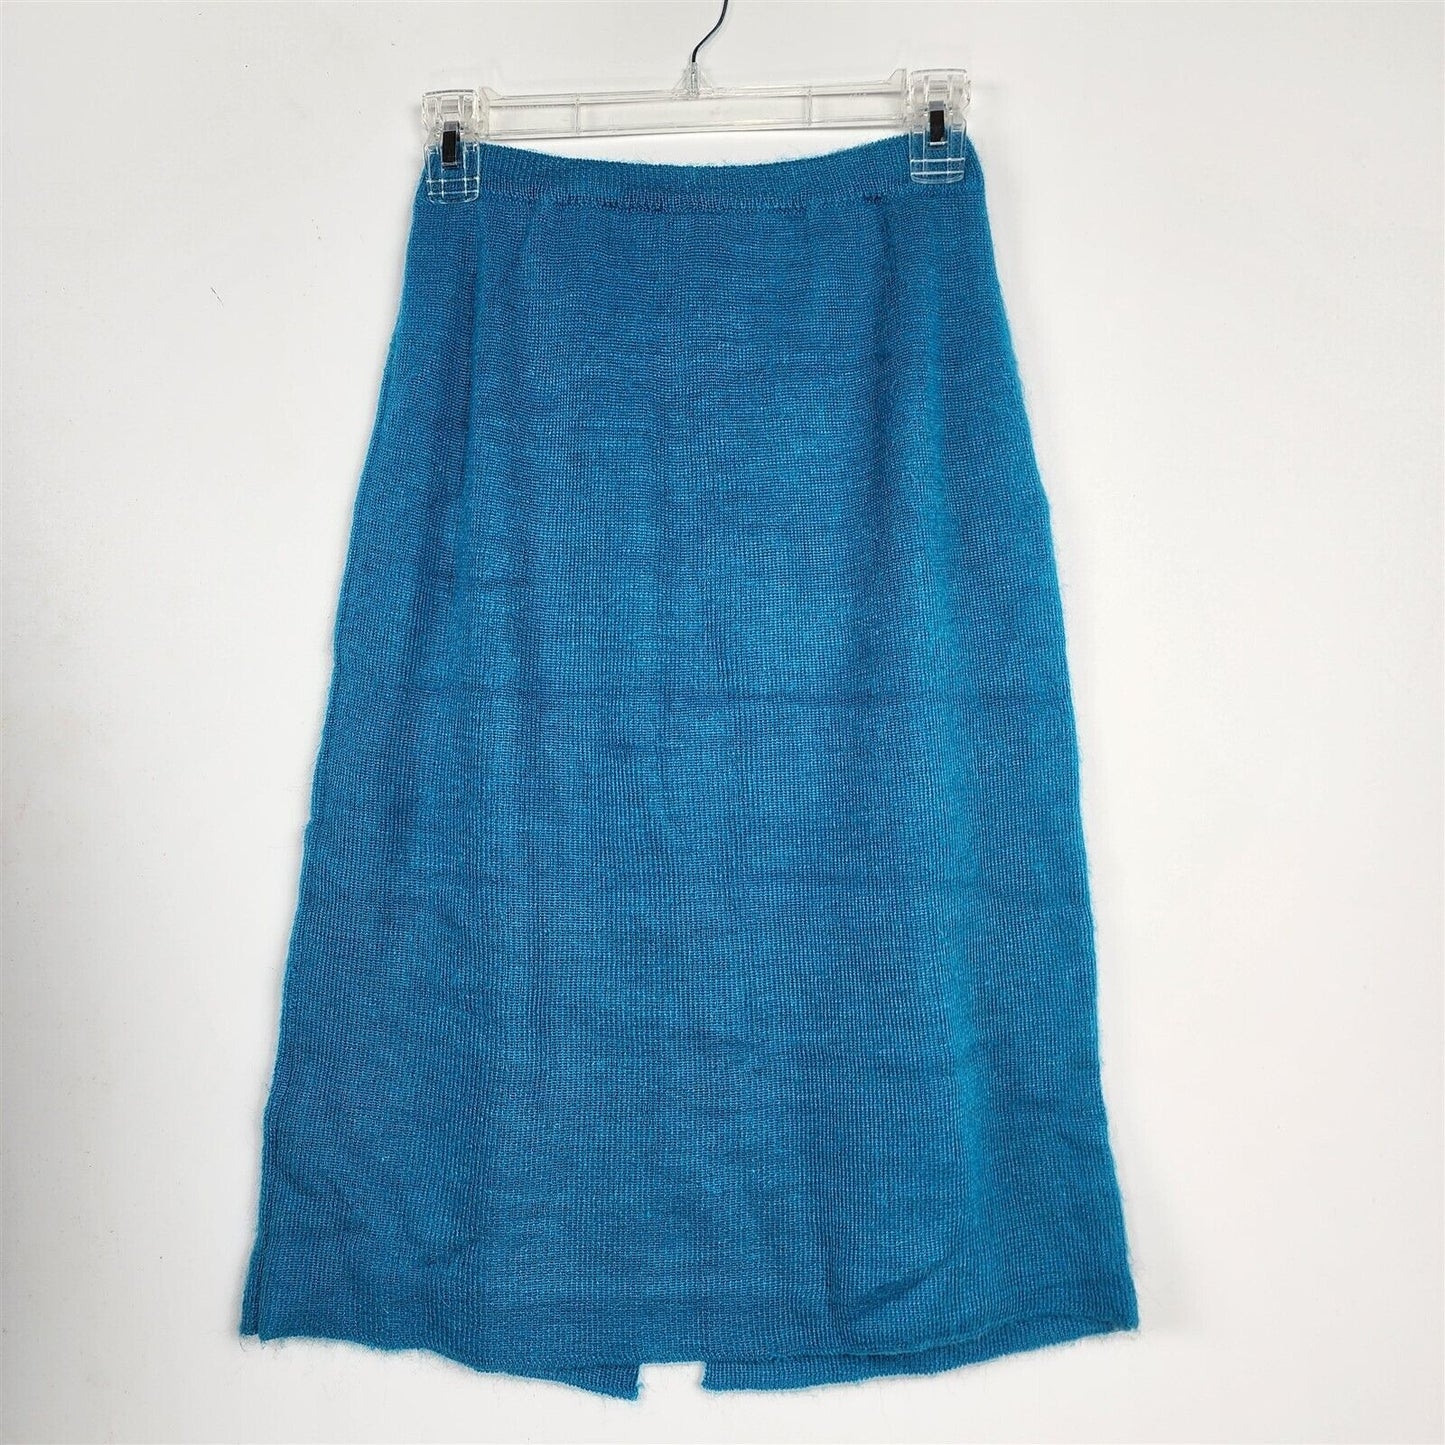 Vintage 1980s Dressy Tessy Knit Sweater & Skirt Set Teal Blue Off the Shoulder